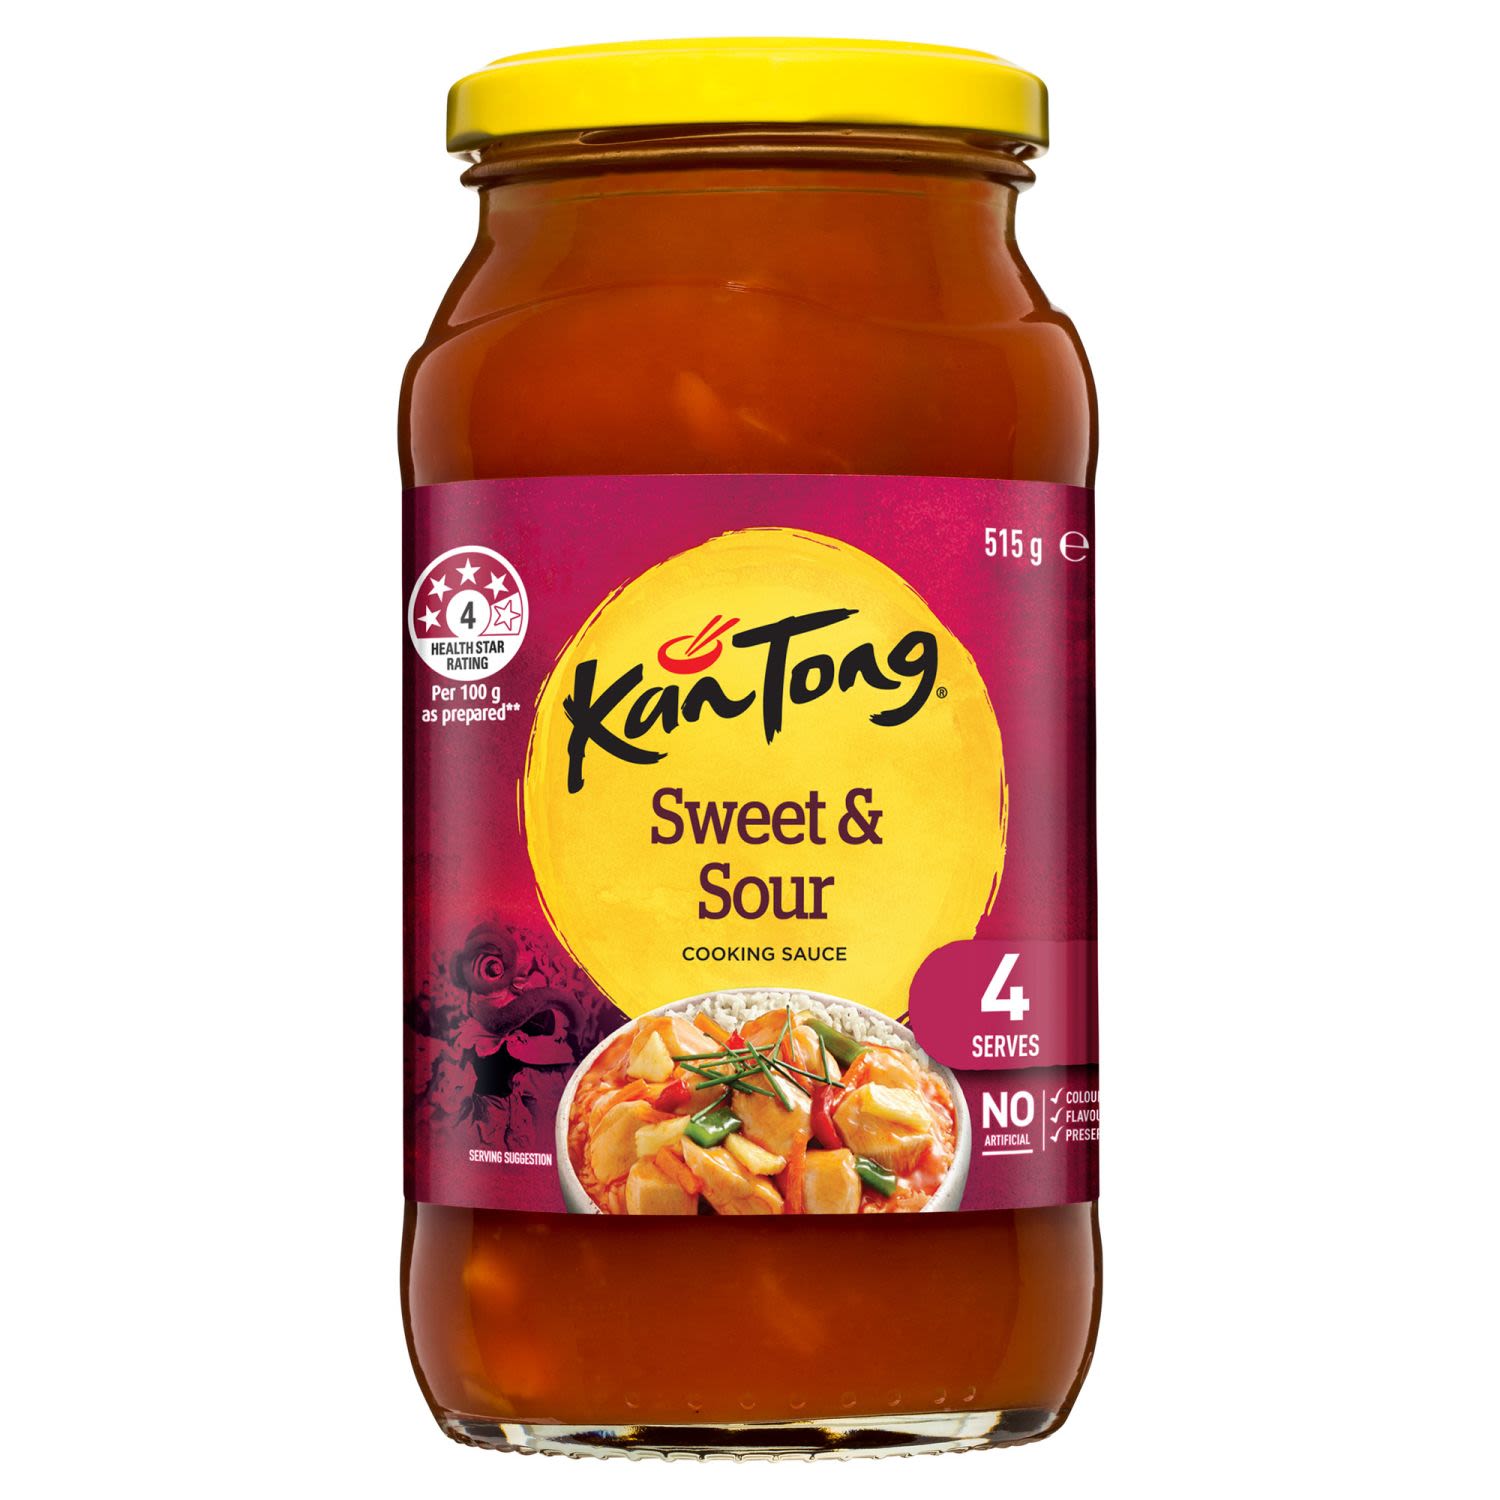 Kan Tong Stir Fry Sauce Sweet & Sour, 515 Gram